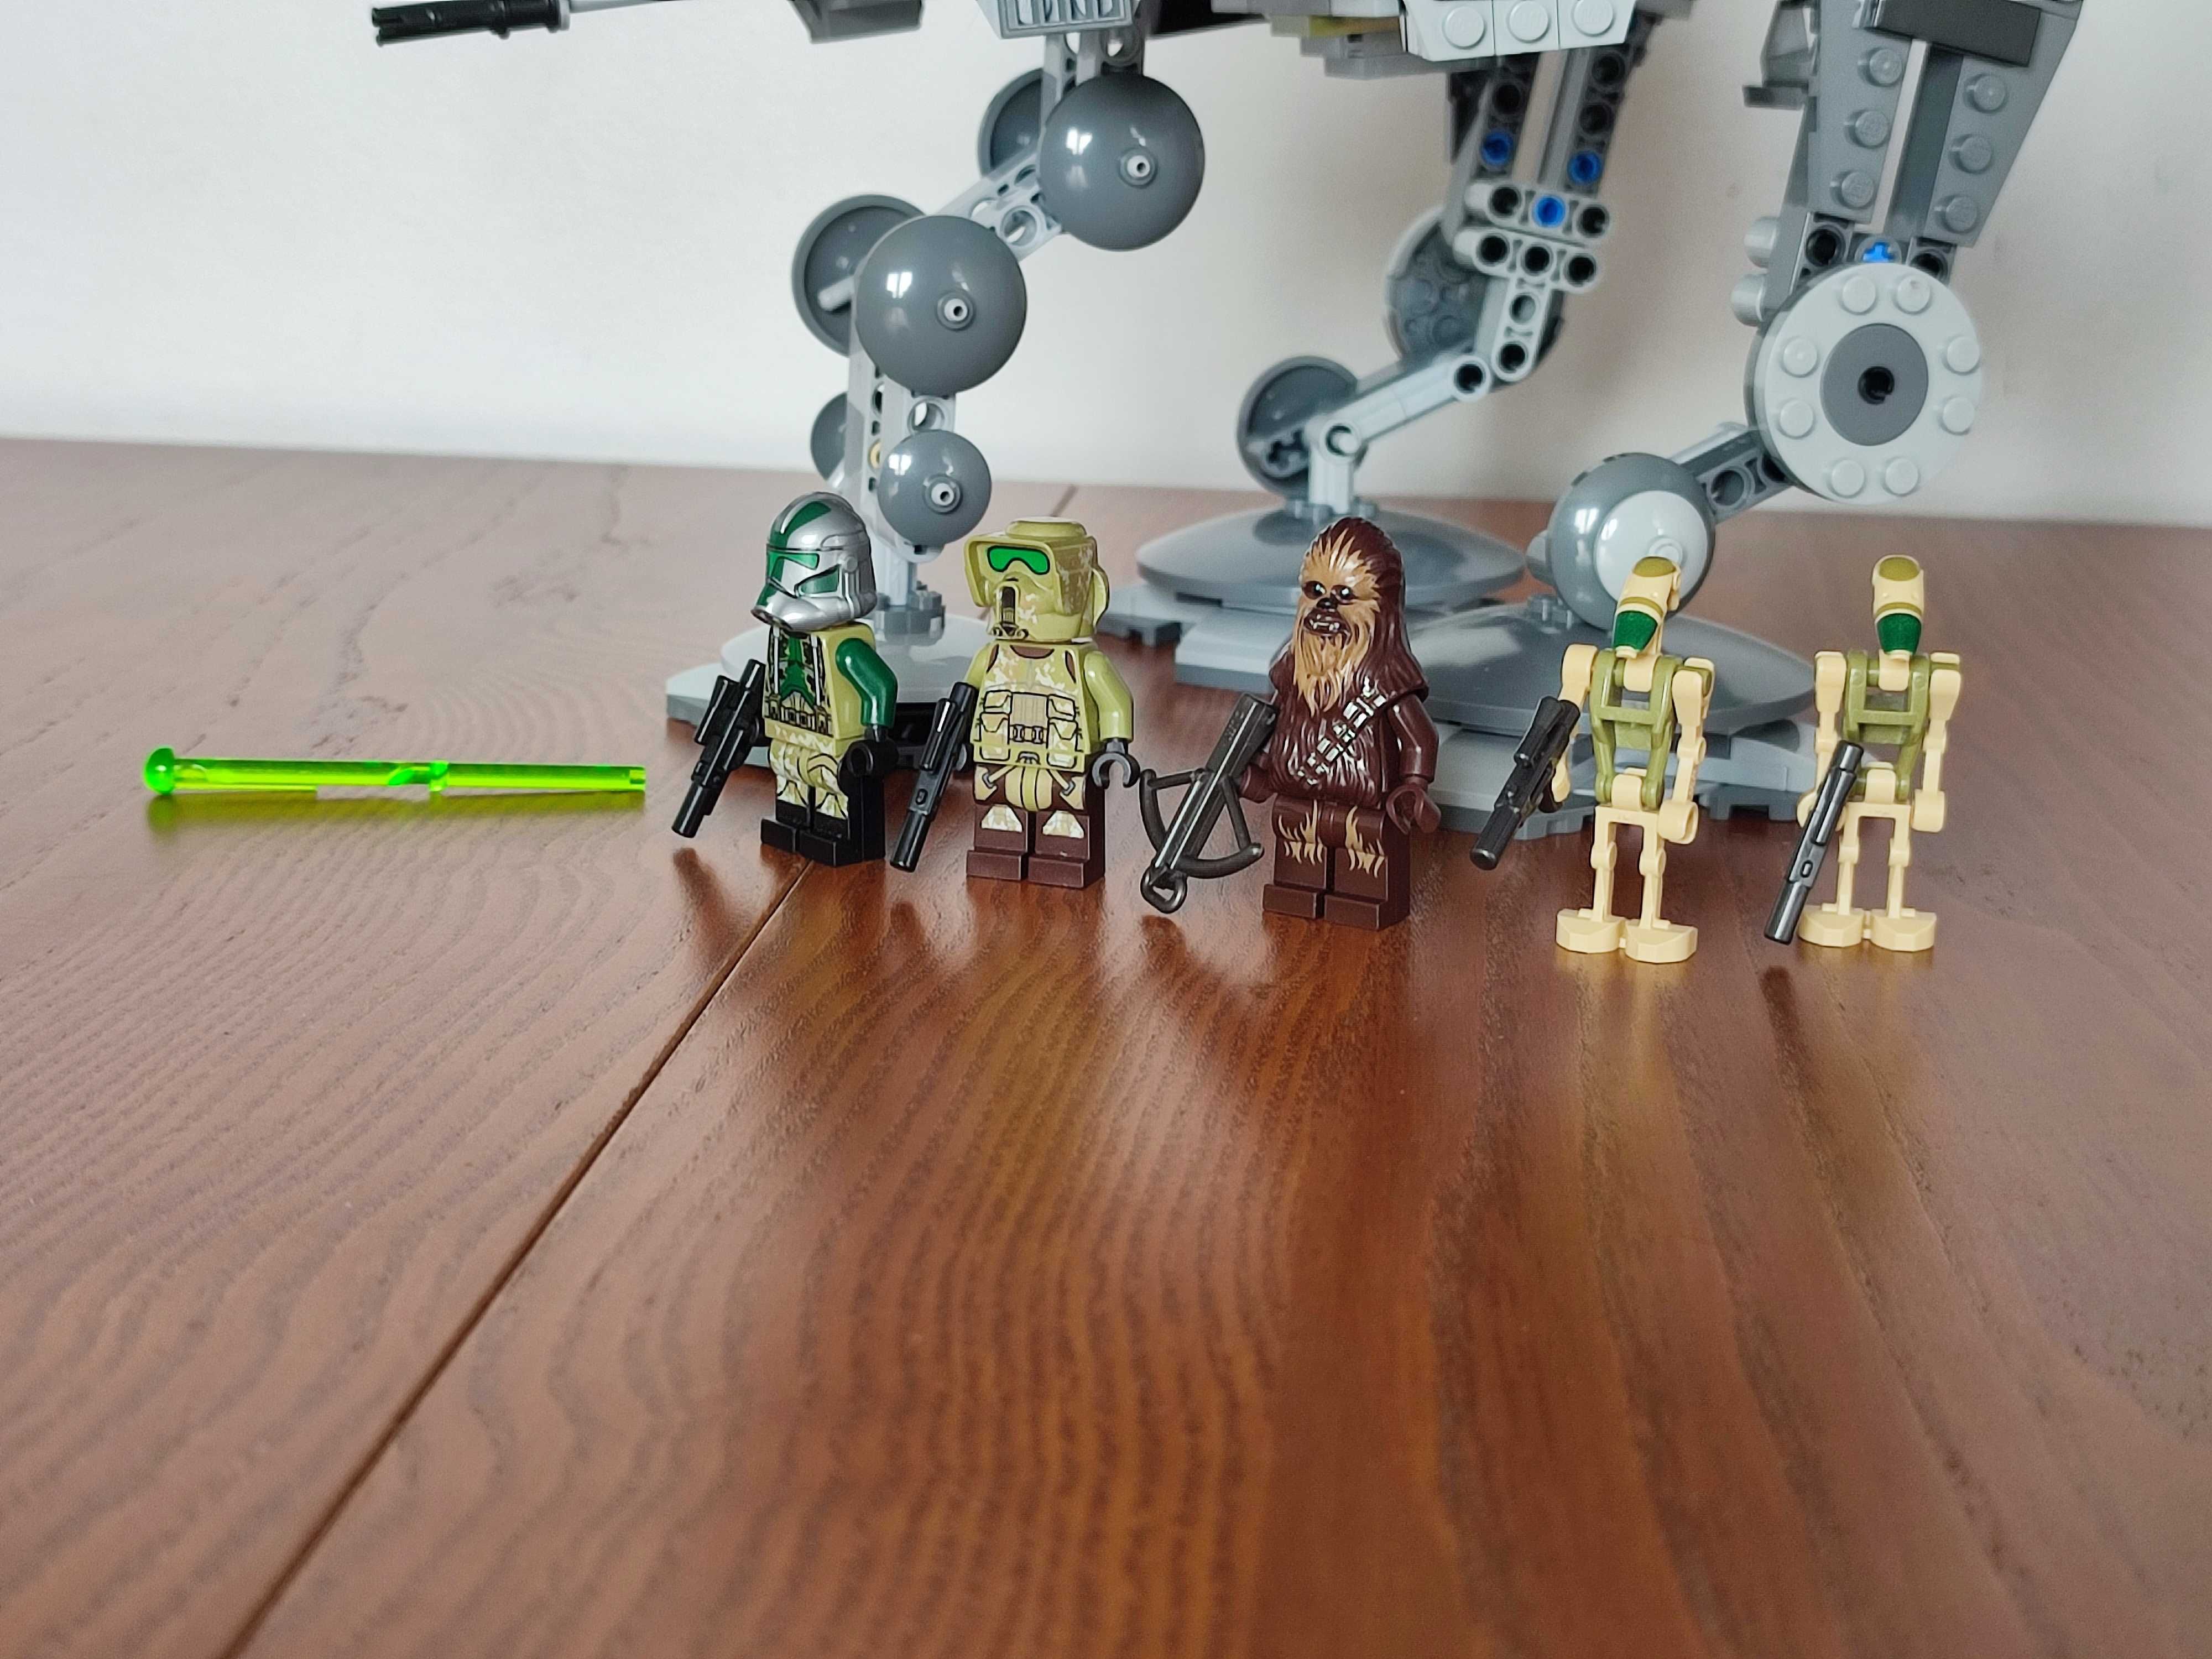 Lego Star Wars 75234 kompletny zestaw